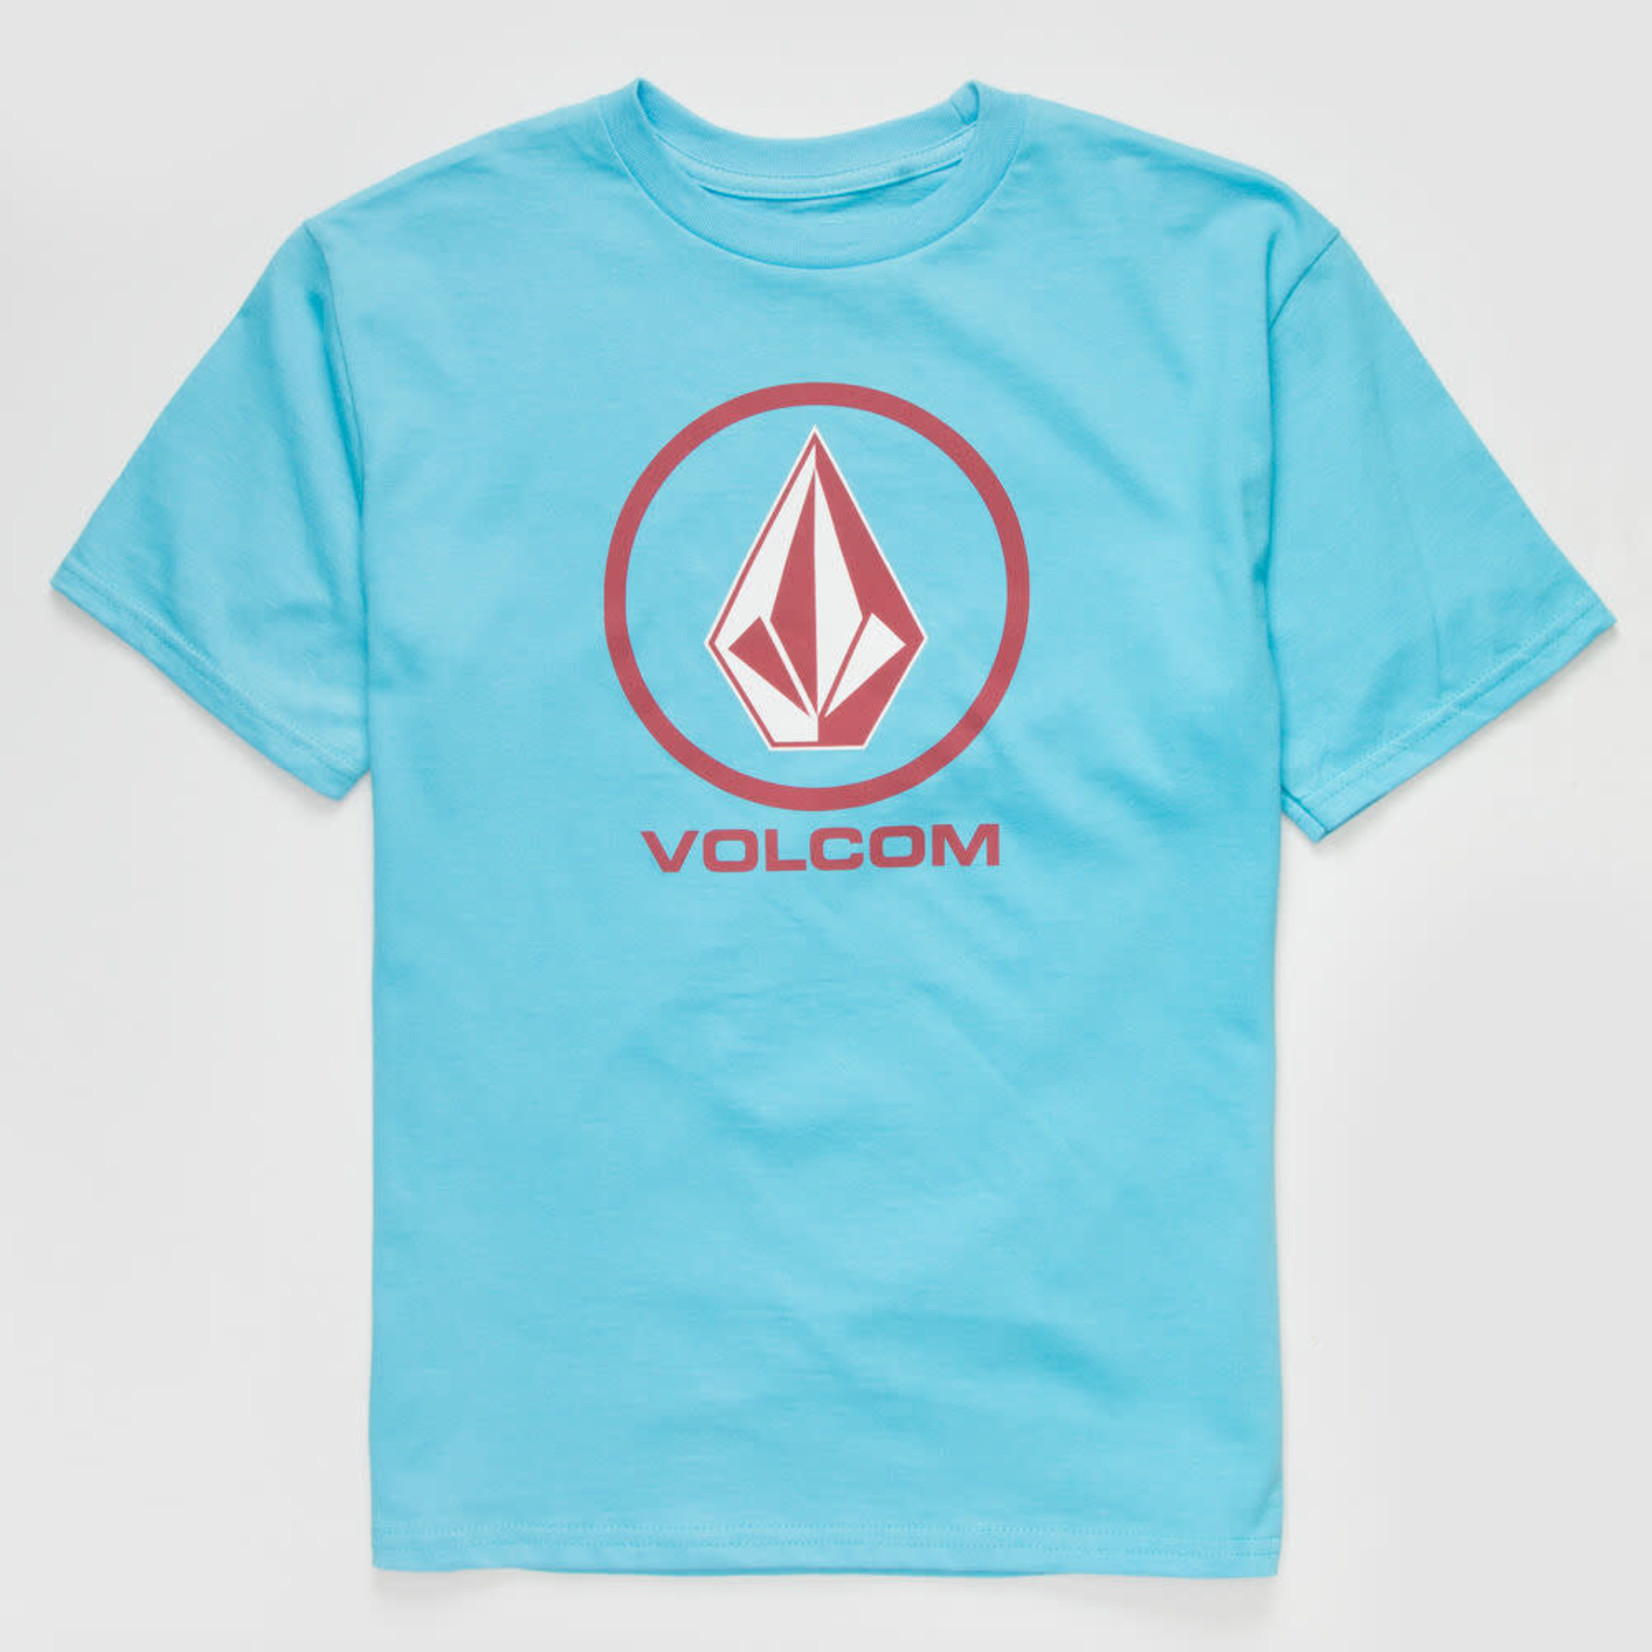 Volcom Volcom Crisp Stone Youth T-Shirt - Aqua Blue -